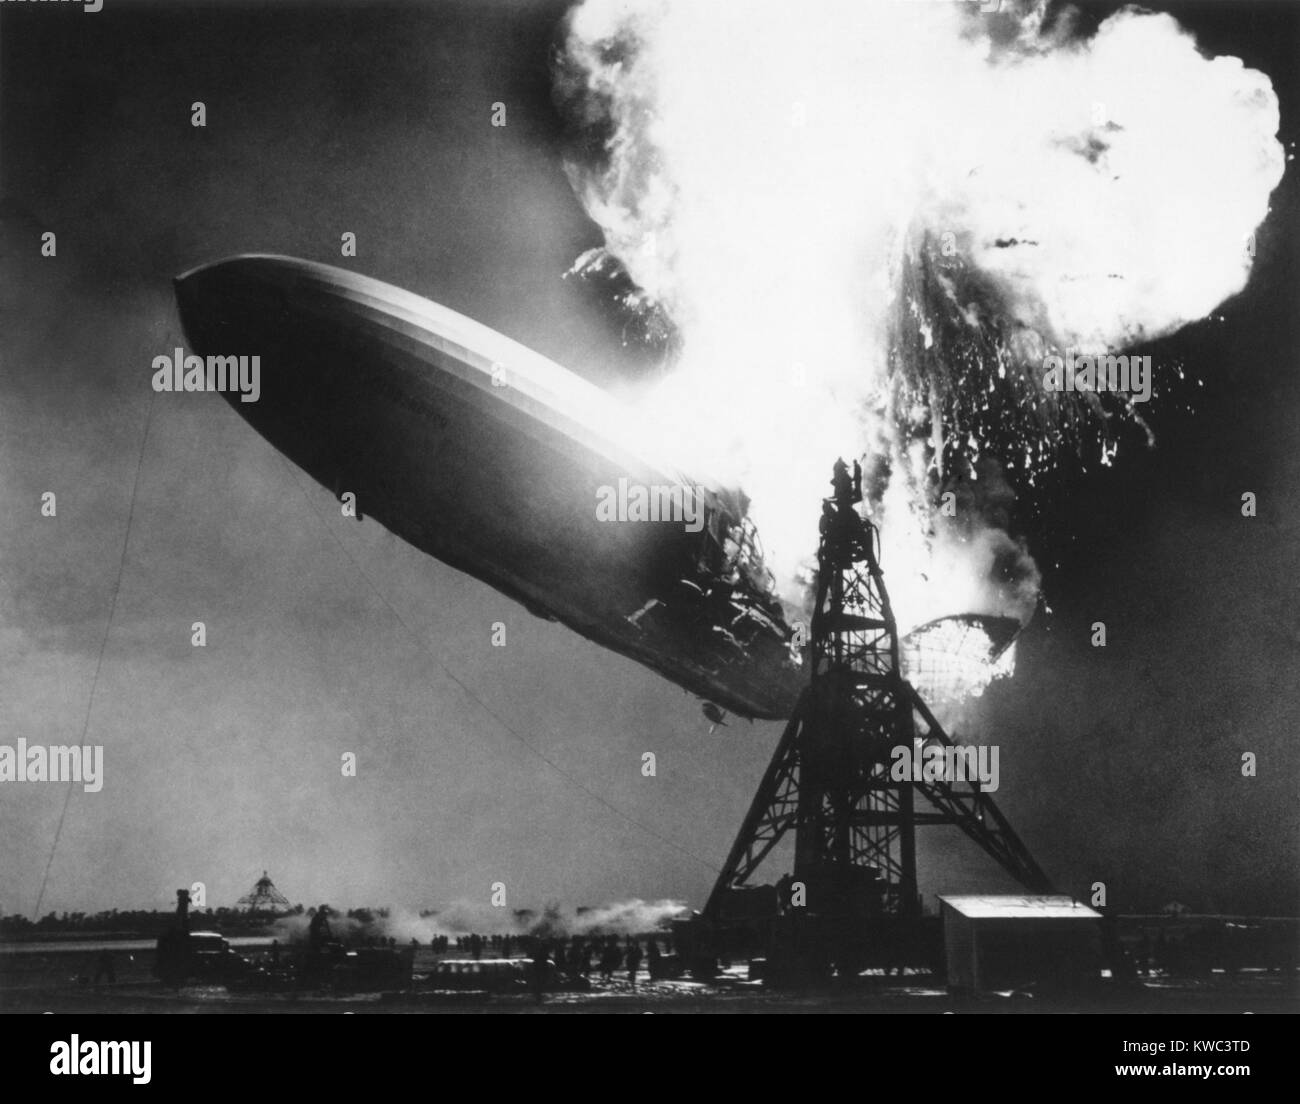 Die deutsche Passagier Luftschiff Hindenburg Sekunden nach Feuer fangen, 6. Mai 1937. Bei 200 Fuß über dem Boden, Flammen auf der Oberseite und auf der Rückseite des Schiffes ausbrechen. Es kam wie es brannte, den Boden erreicht als Metall Skelett nach dem Stoffbezug in weniger als 30 Sekunden verbrannt. (BSLOC 2015 14 188) Stockfoto